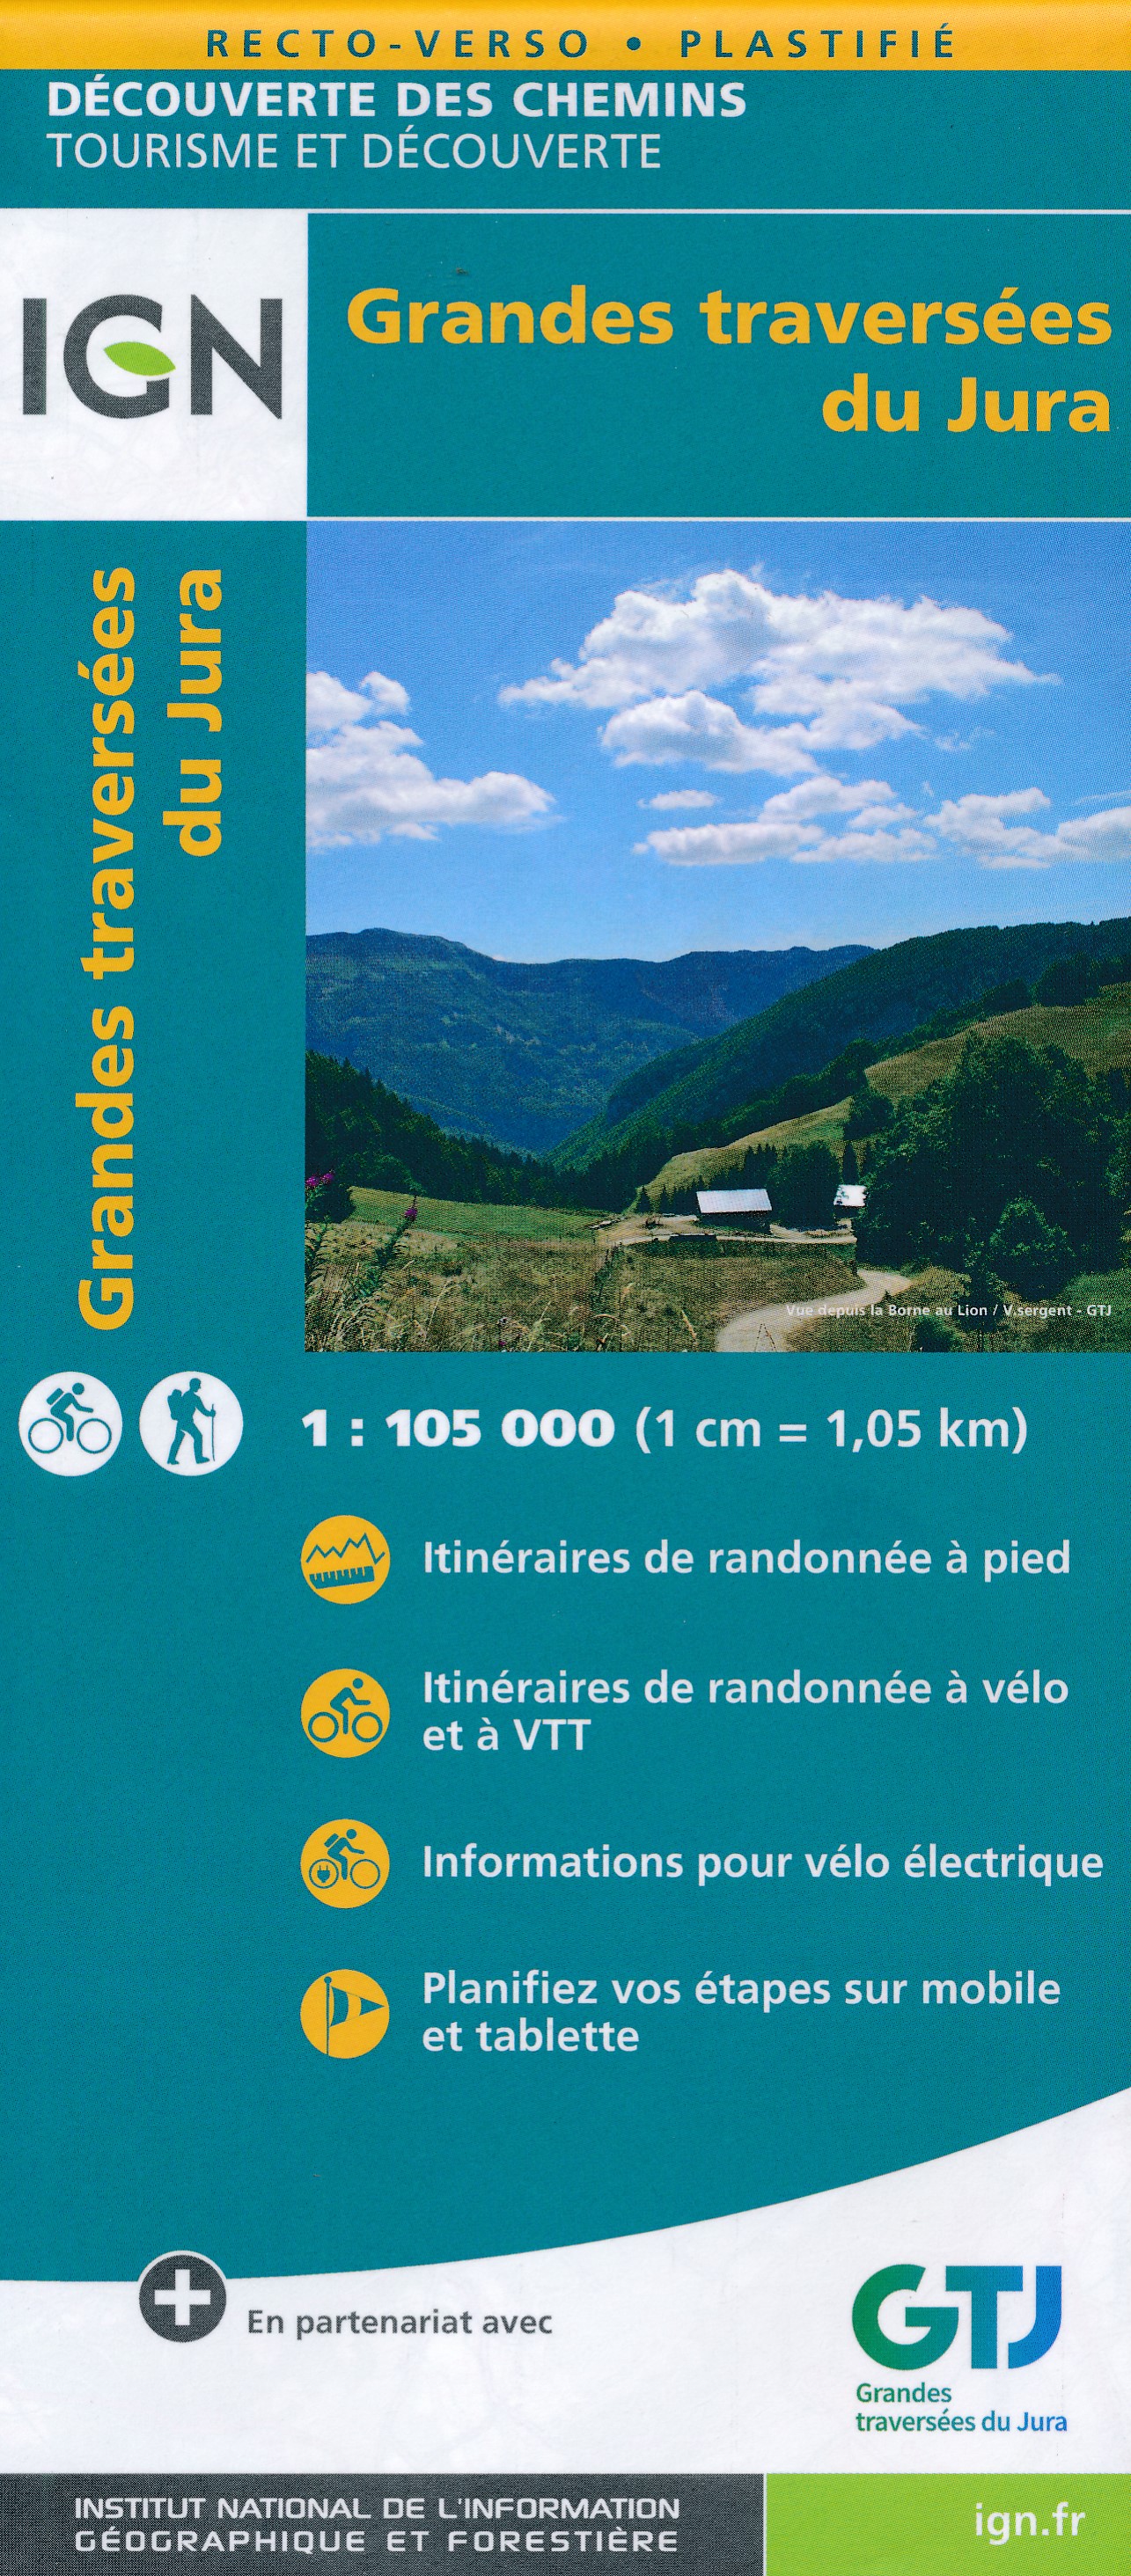 Online bestellen: Fietskaart - Wandelkaart Grandes traversees du Jura met GR-5 | IGN - Institut Géographique National